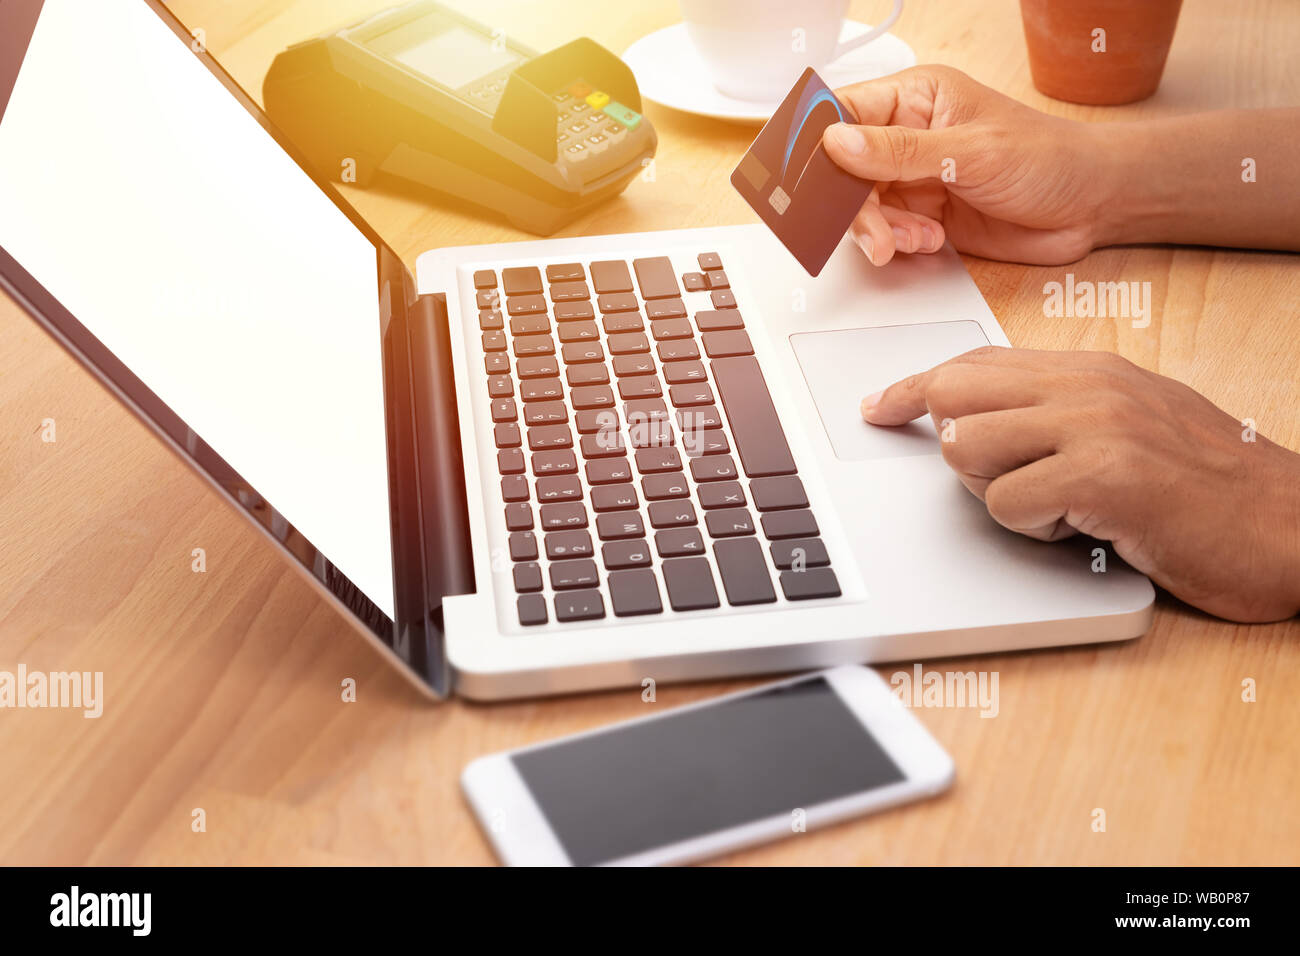 Mann hält eine Kreditkarte und Kauf online Zahlung per Computer Notebook Laptop mit leeren weißen Bildschirm am Arbeitsplatz Stockfoto